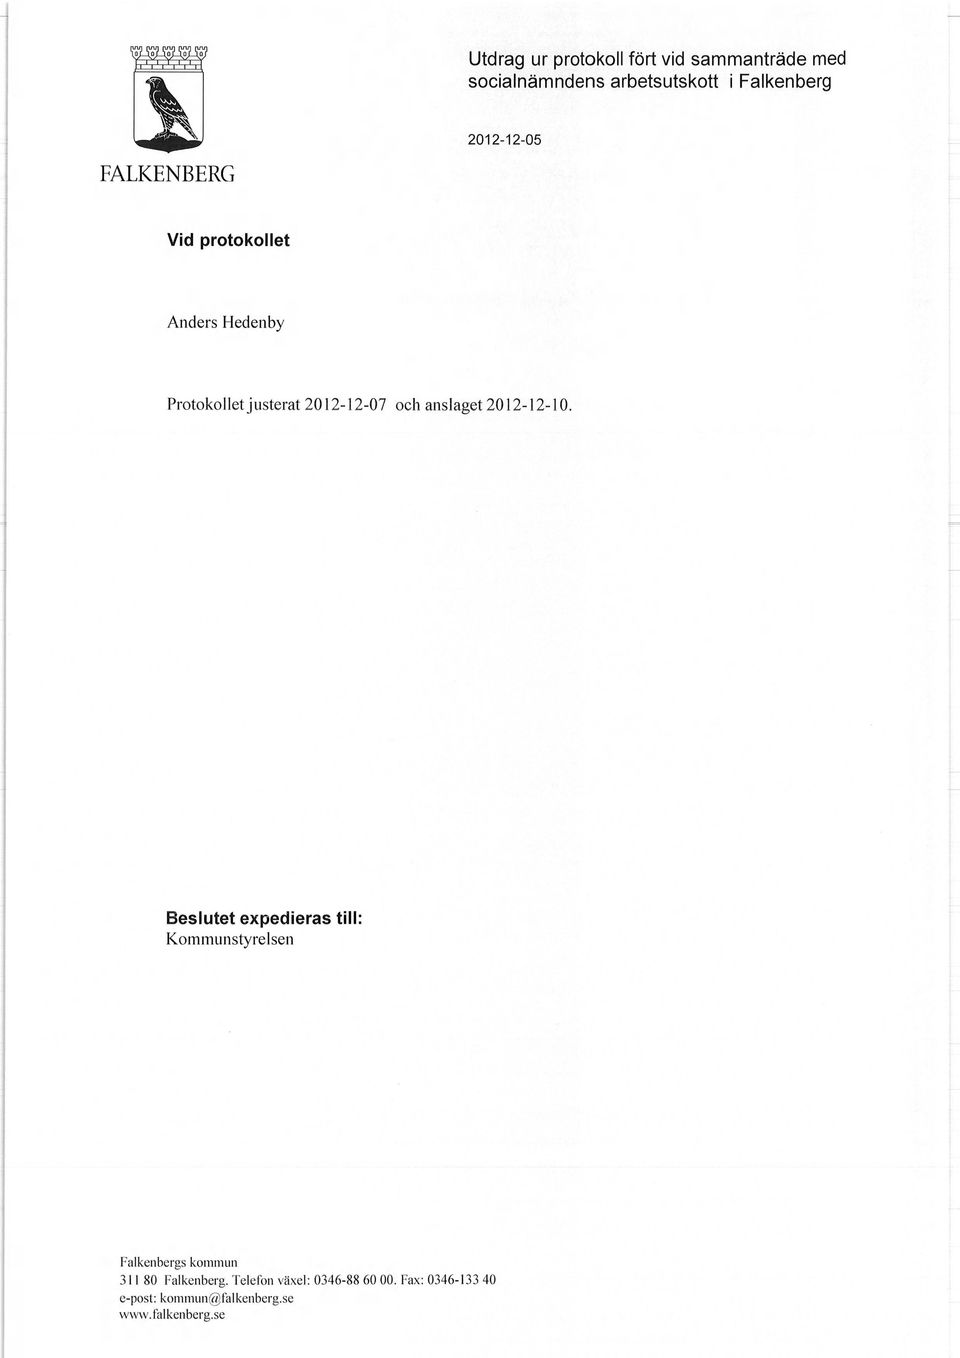 Protokollet justerat 2012-12-07 och anslaget